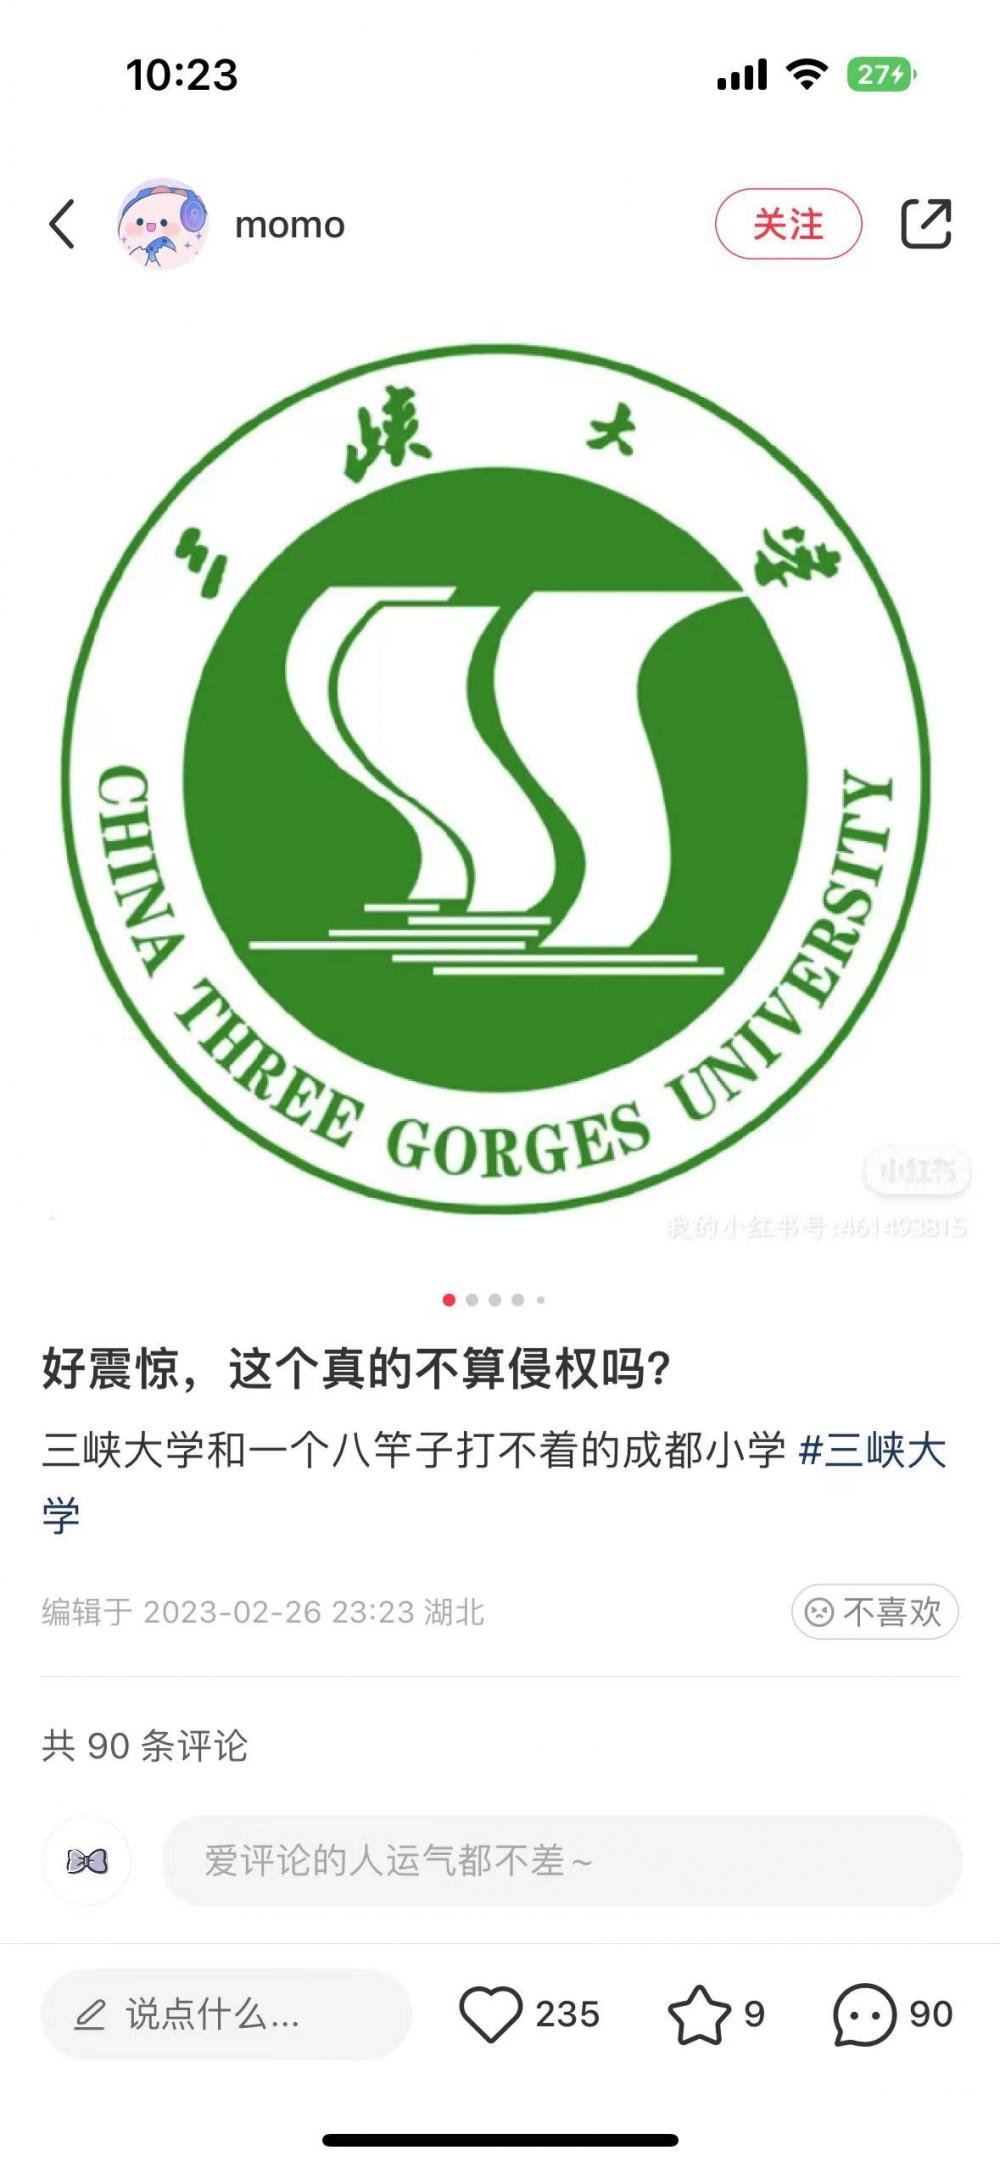 ▲网友晒出的三峡大学校徽。